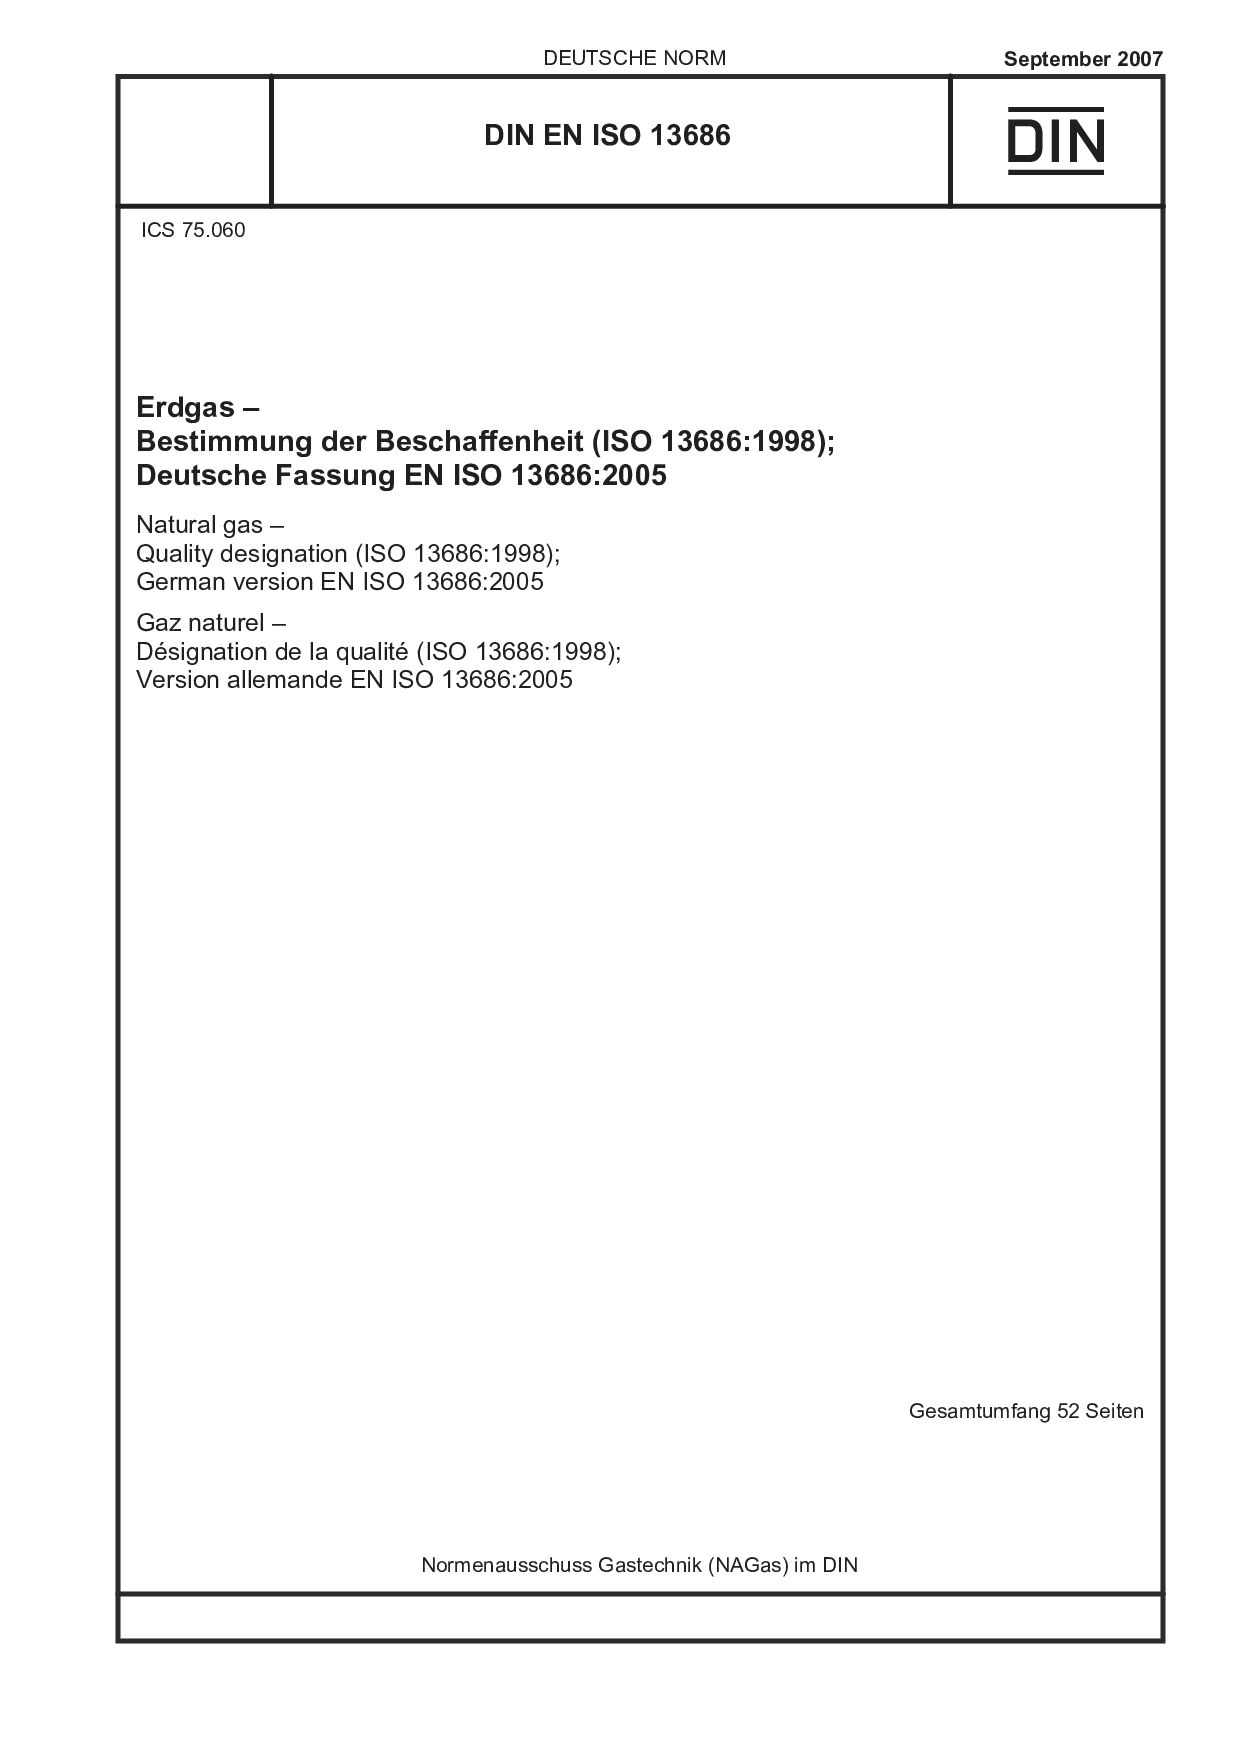 DIN EN ISO 13686:2007封面图